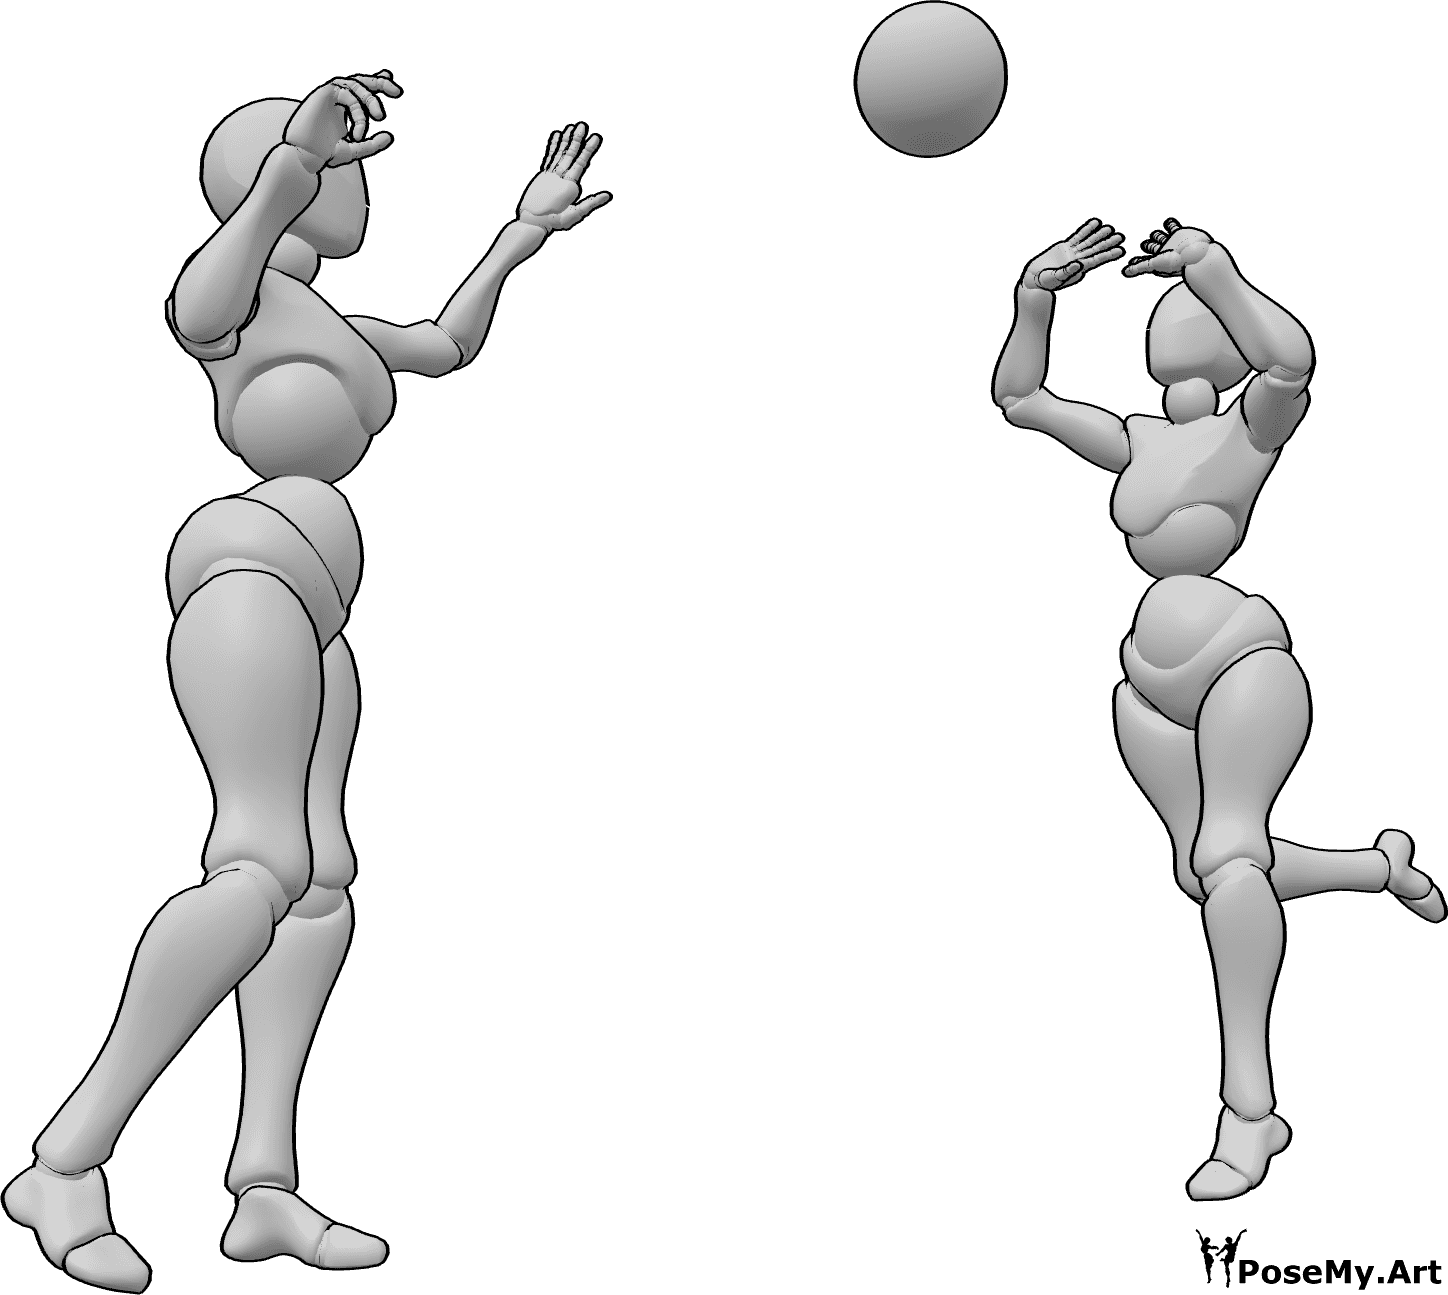 Riferimento alle pose- Posa delle femmine che lanciano la palla - Due femmine giocano con una palla e se la passano l'una con l'altra